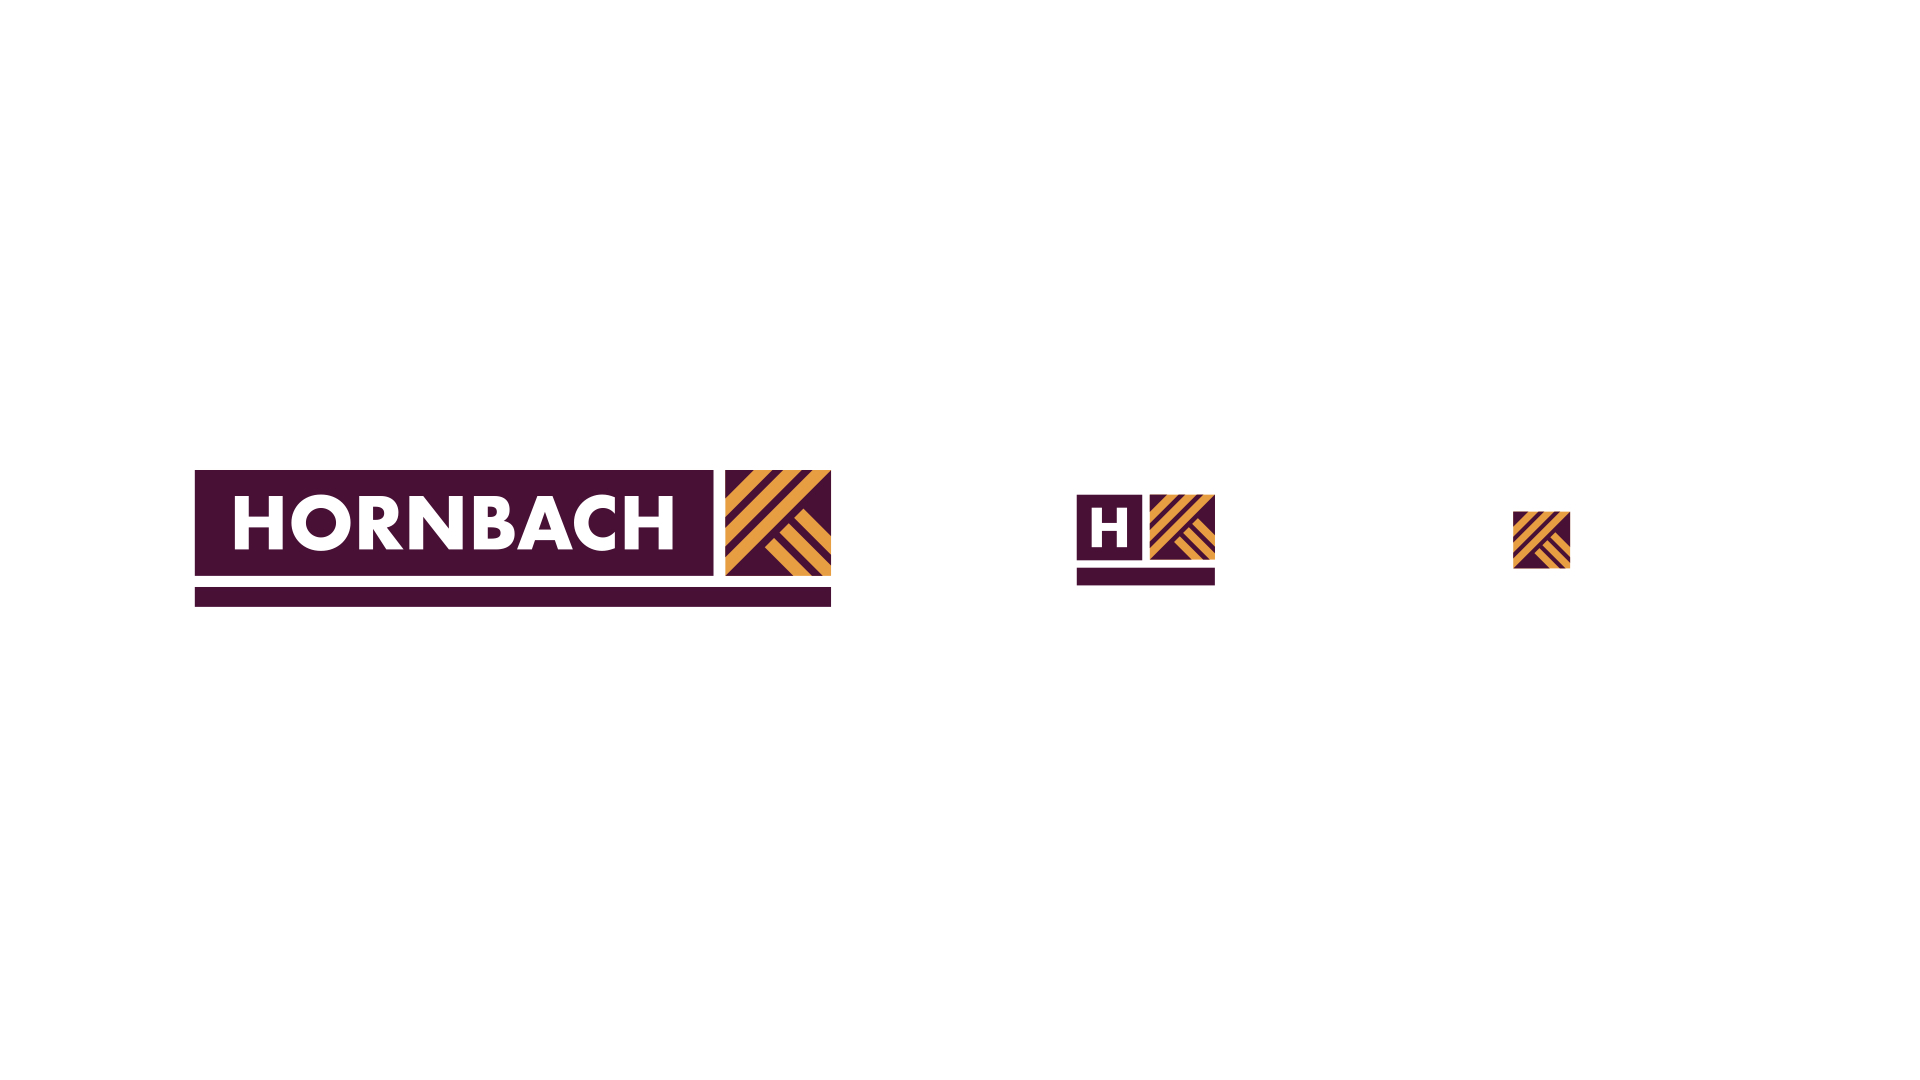 das neue hornbach logo für das barrierefreie branding in seinen drei varianten für unterschiedliche darstellungsgrößen